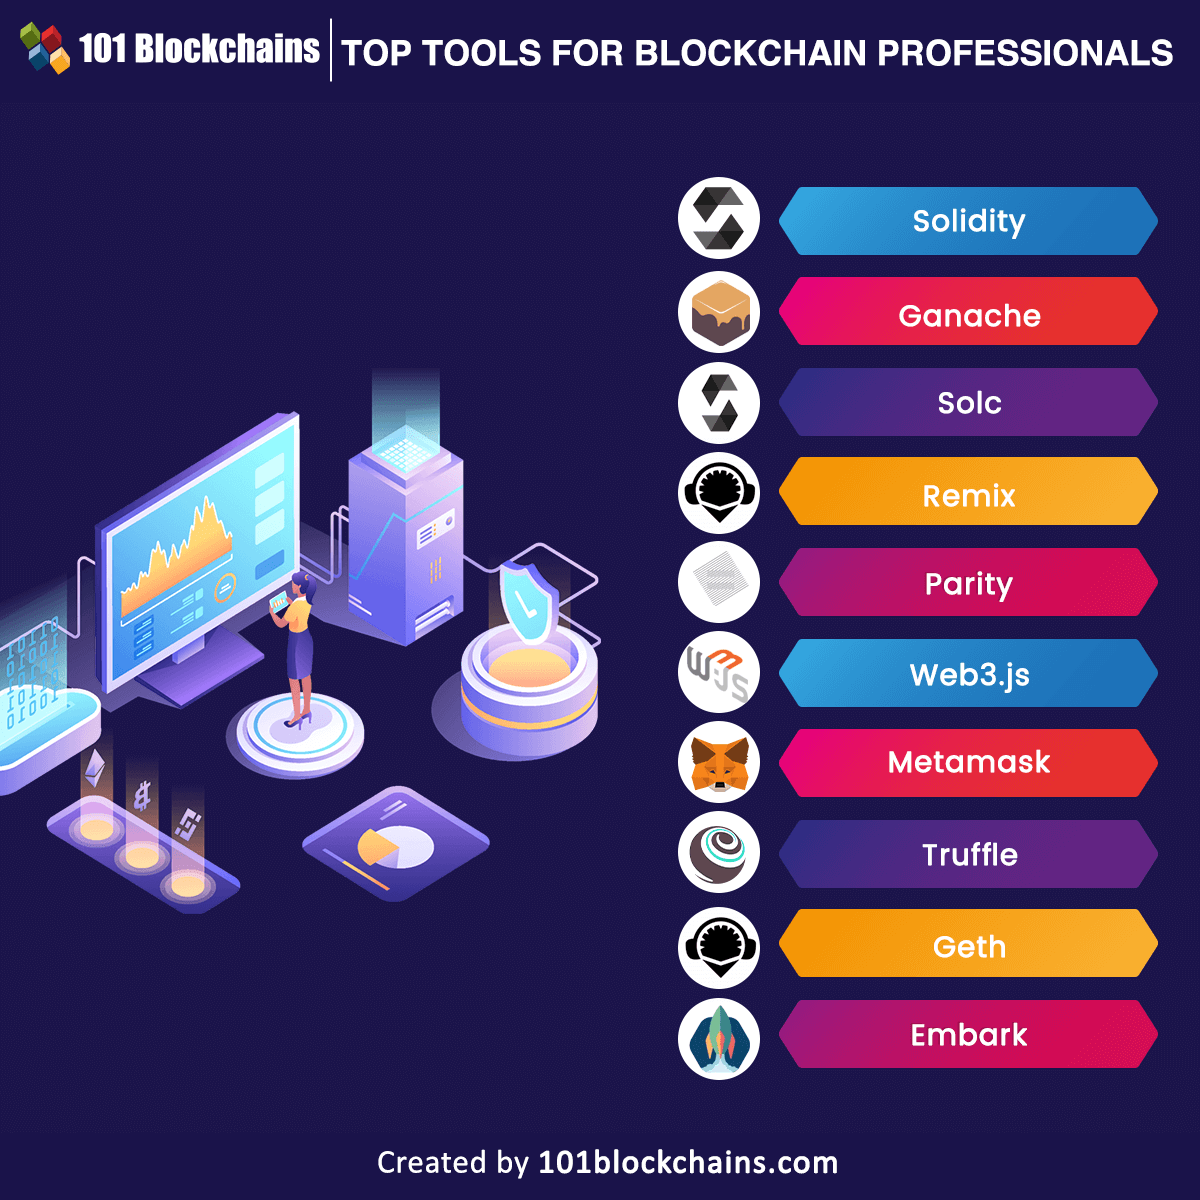 Top Tools for Blockchain Professionals